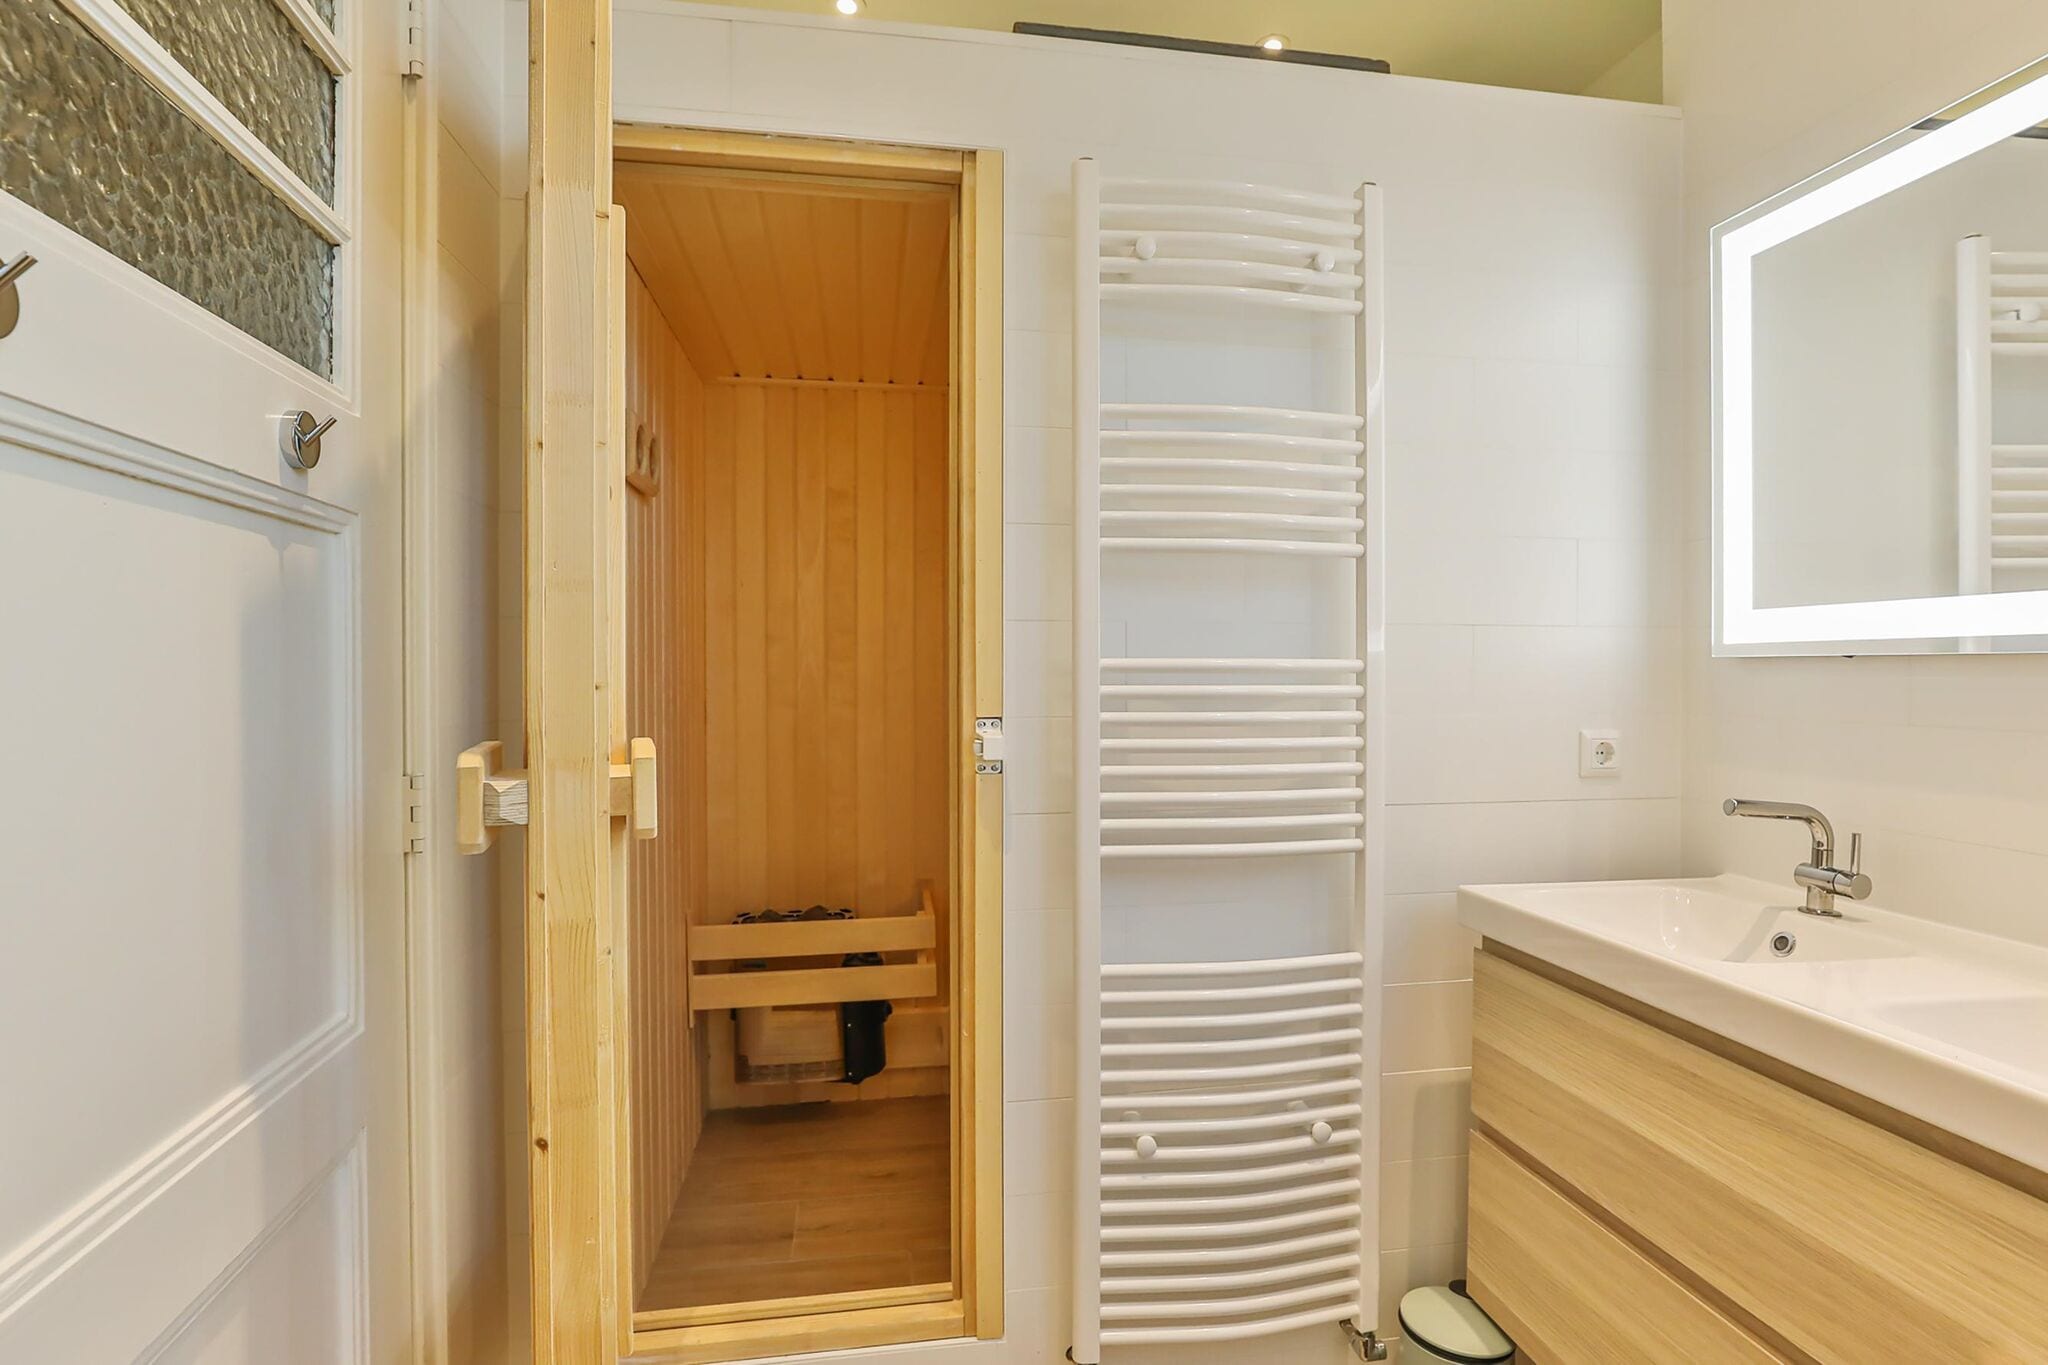 Unieke villa in Rinsumageest met sauna